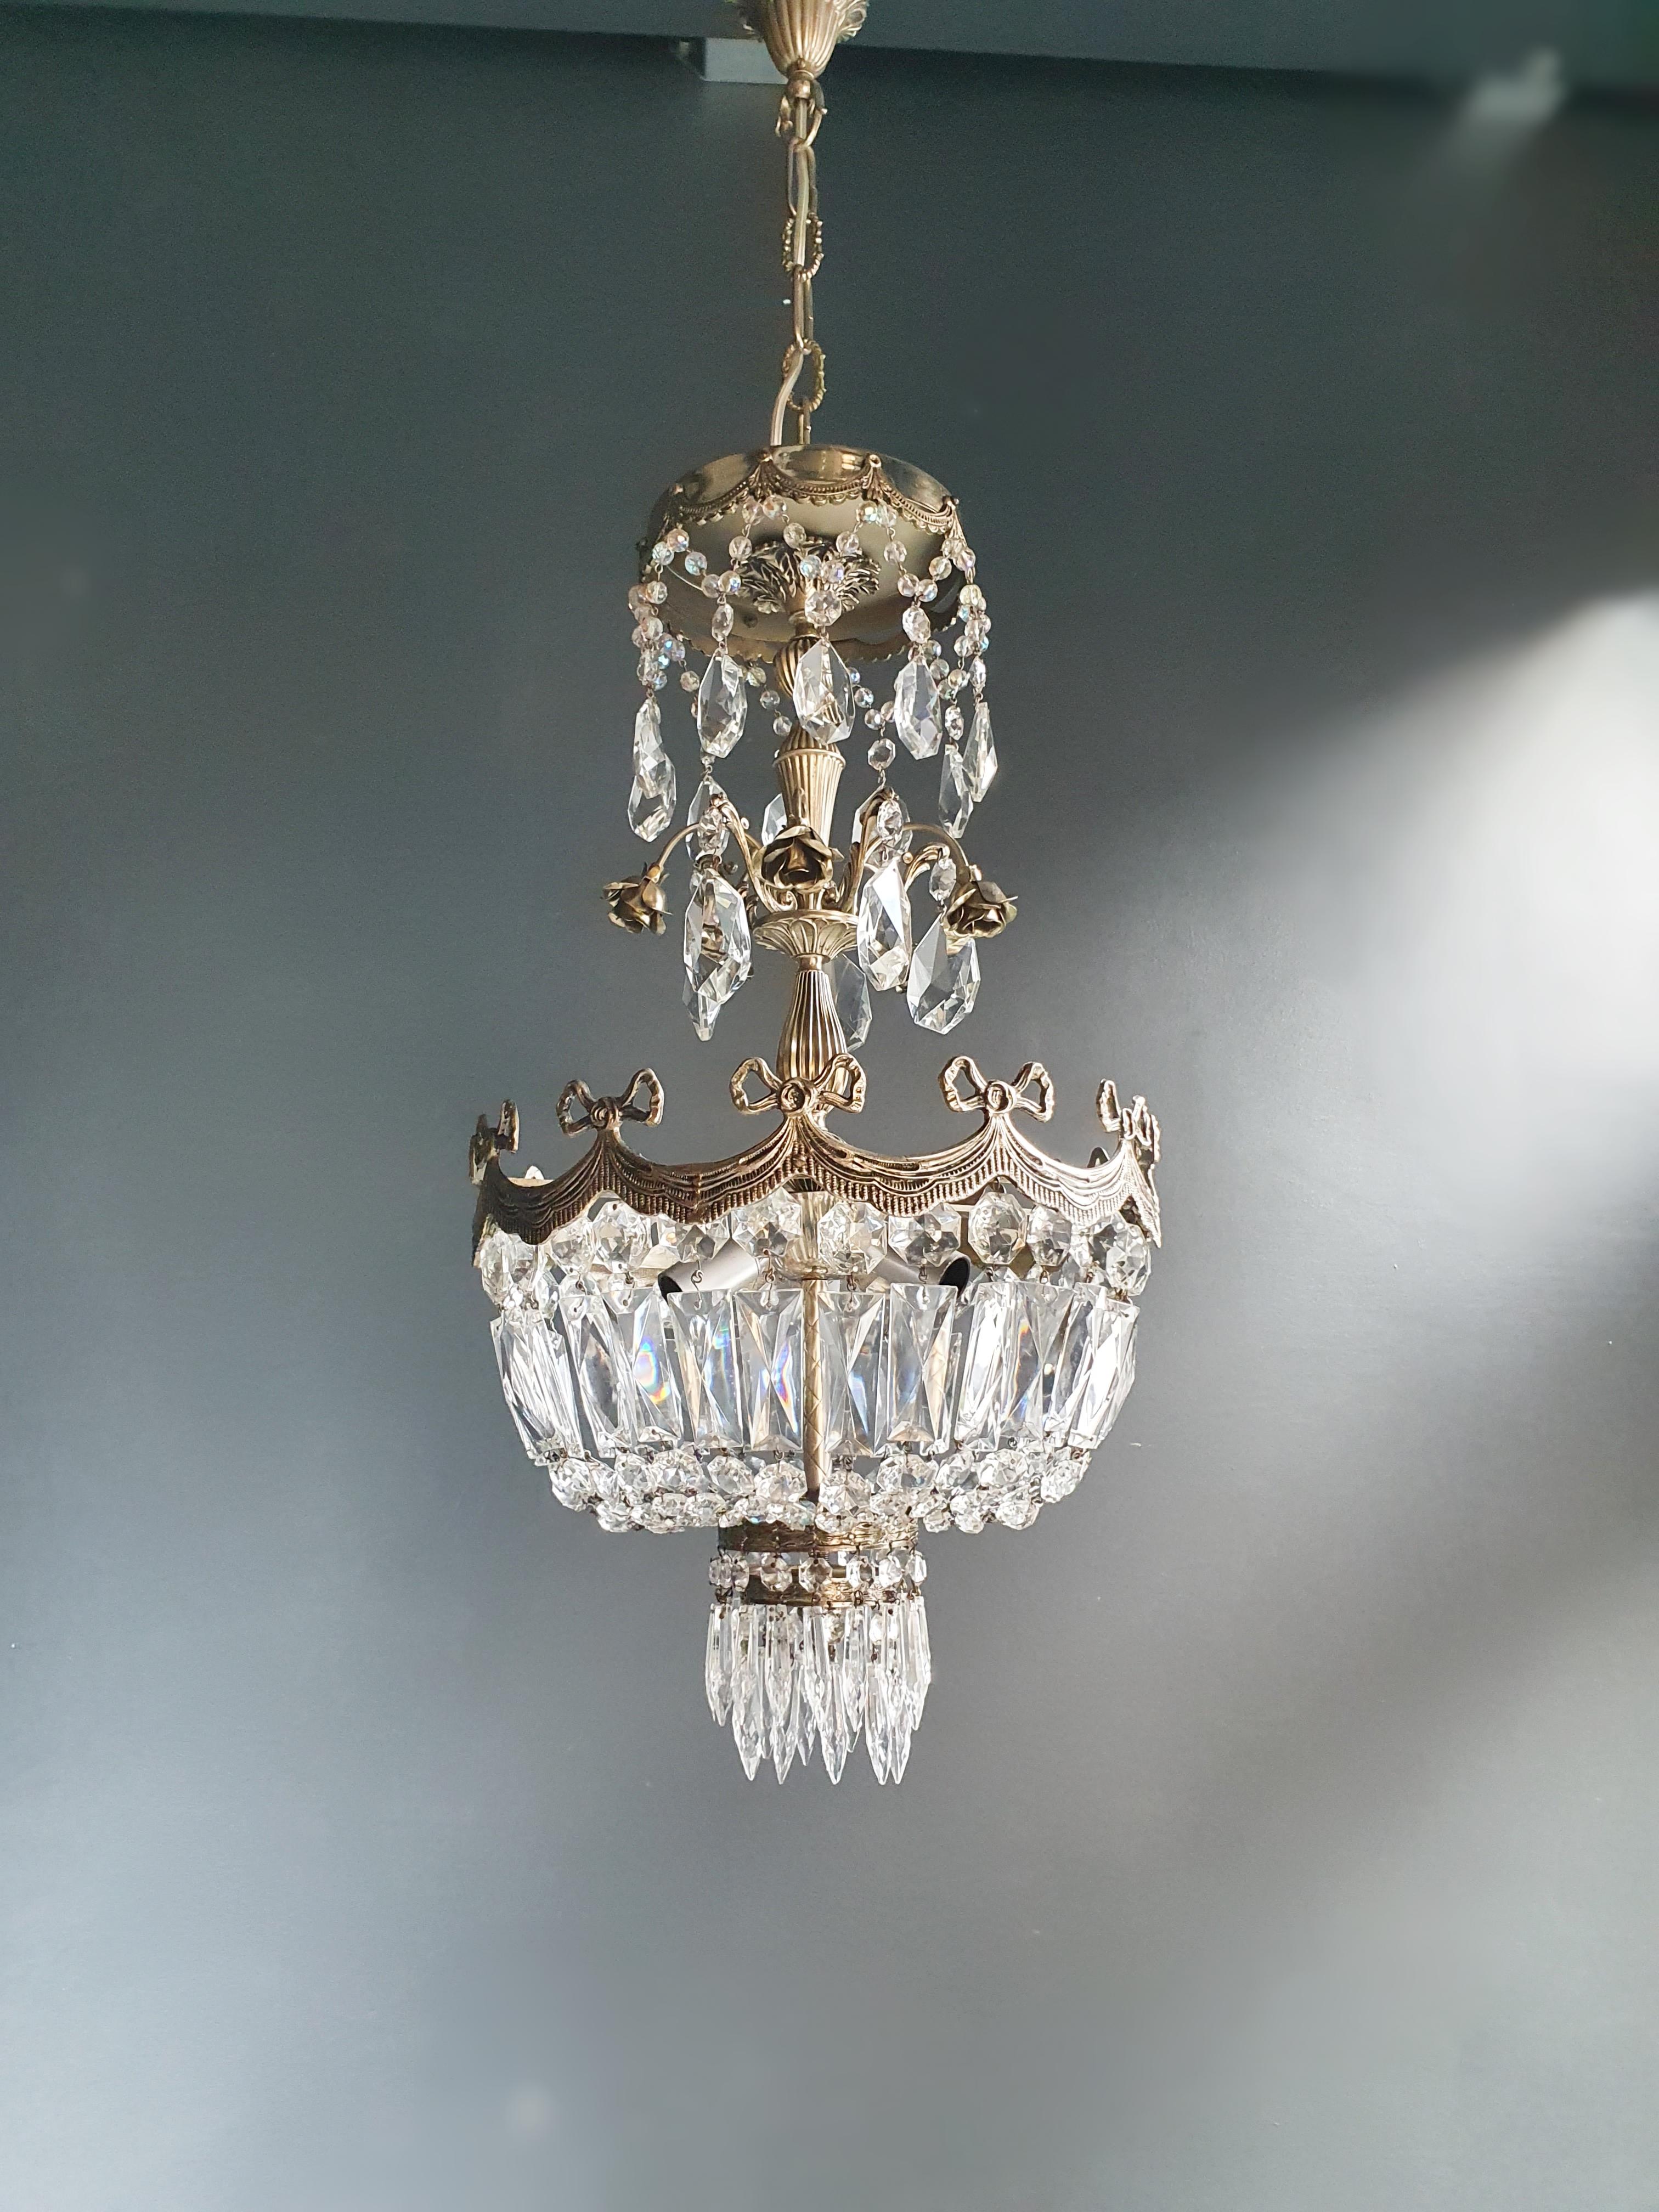 Silver Rose Brass Crystal Chandelier Antique Ceiling Lamp Lustre Art Nouveau 1